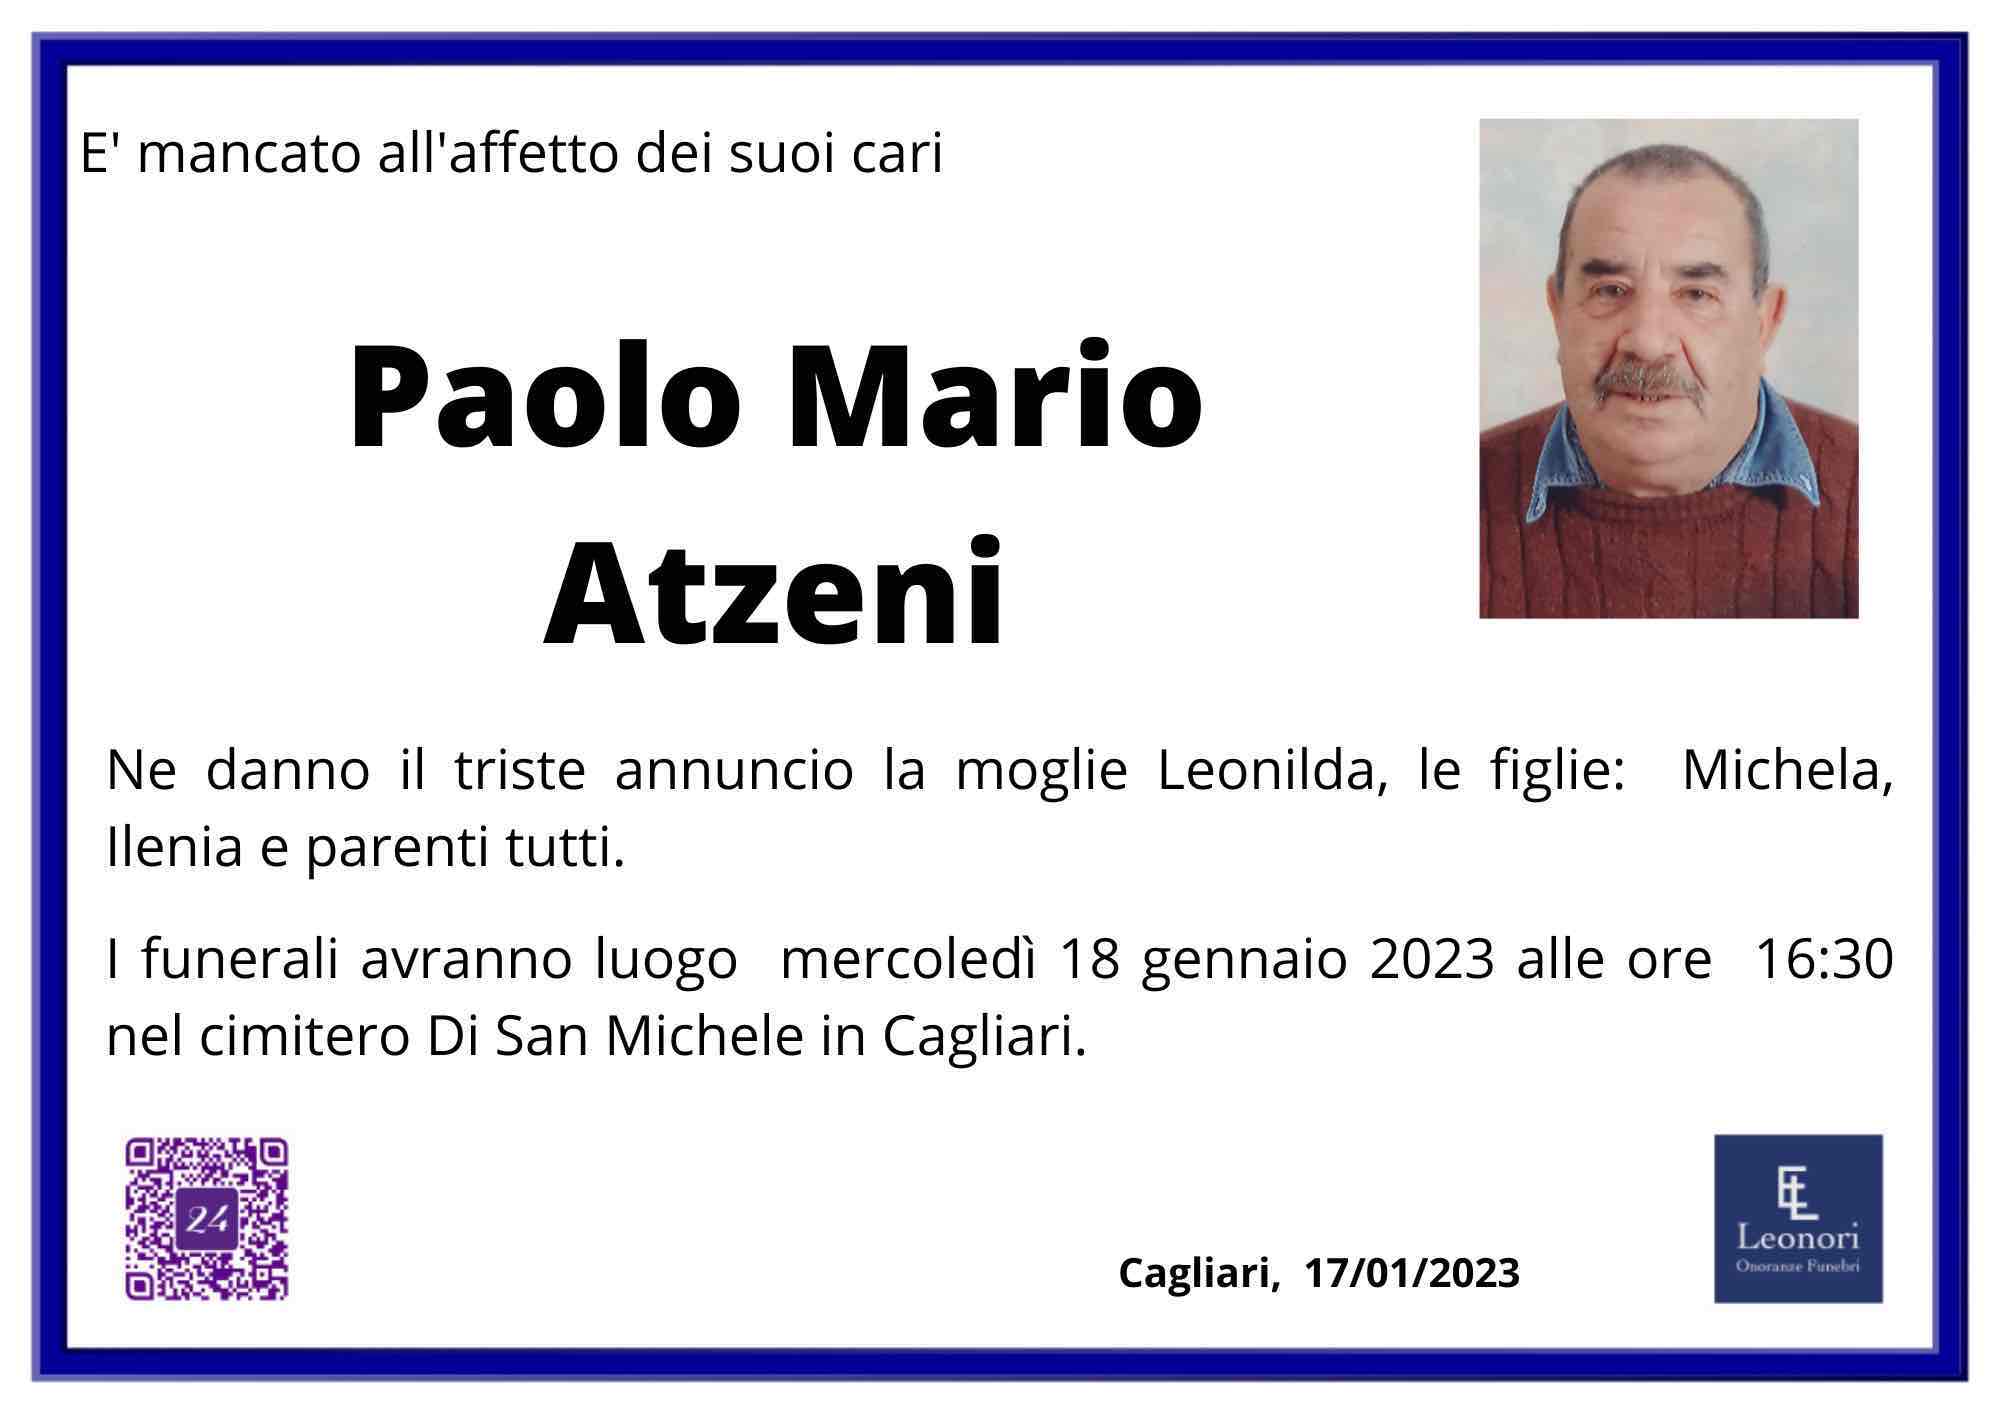 Paolo Mario Atzeni